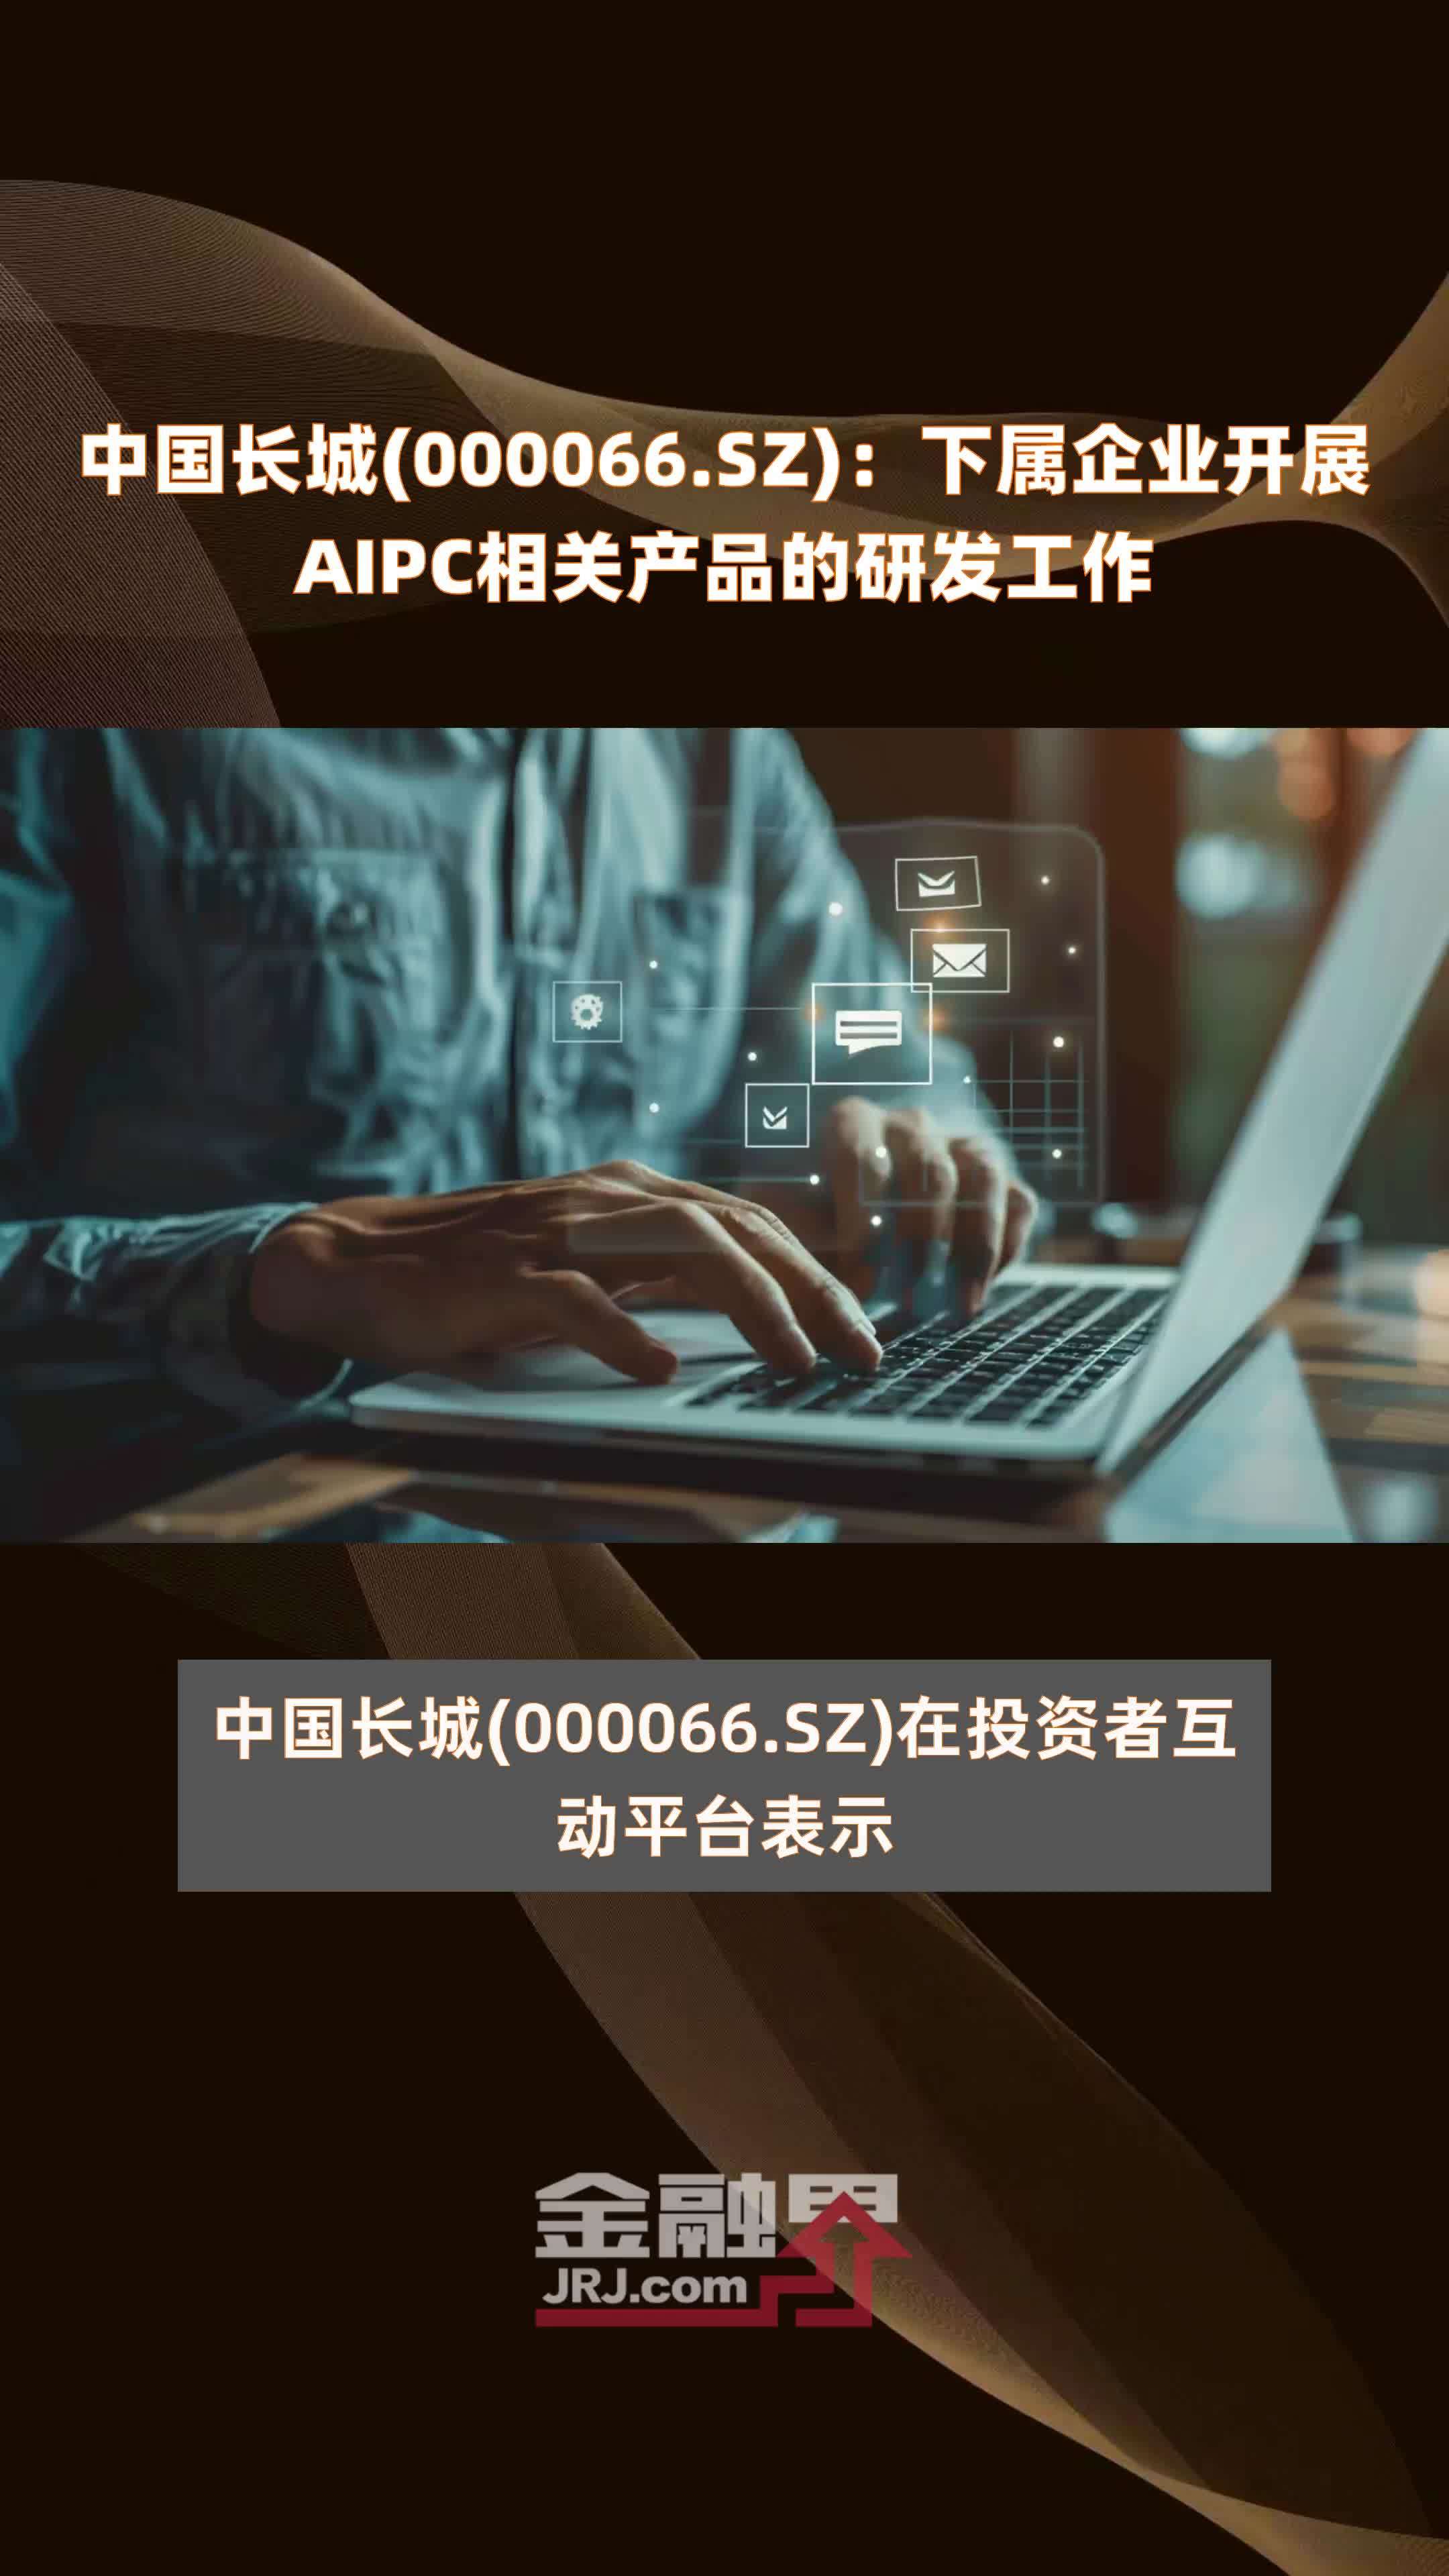 中国长城(000066.SZ)：下属企业开展AIPC相关产品的研发工作 |快报